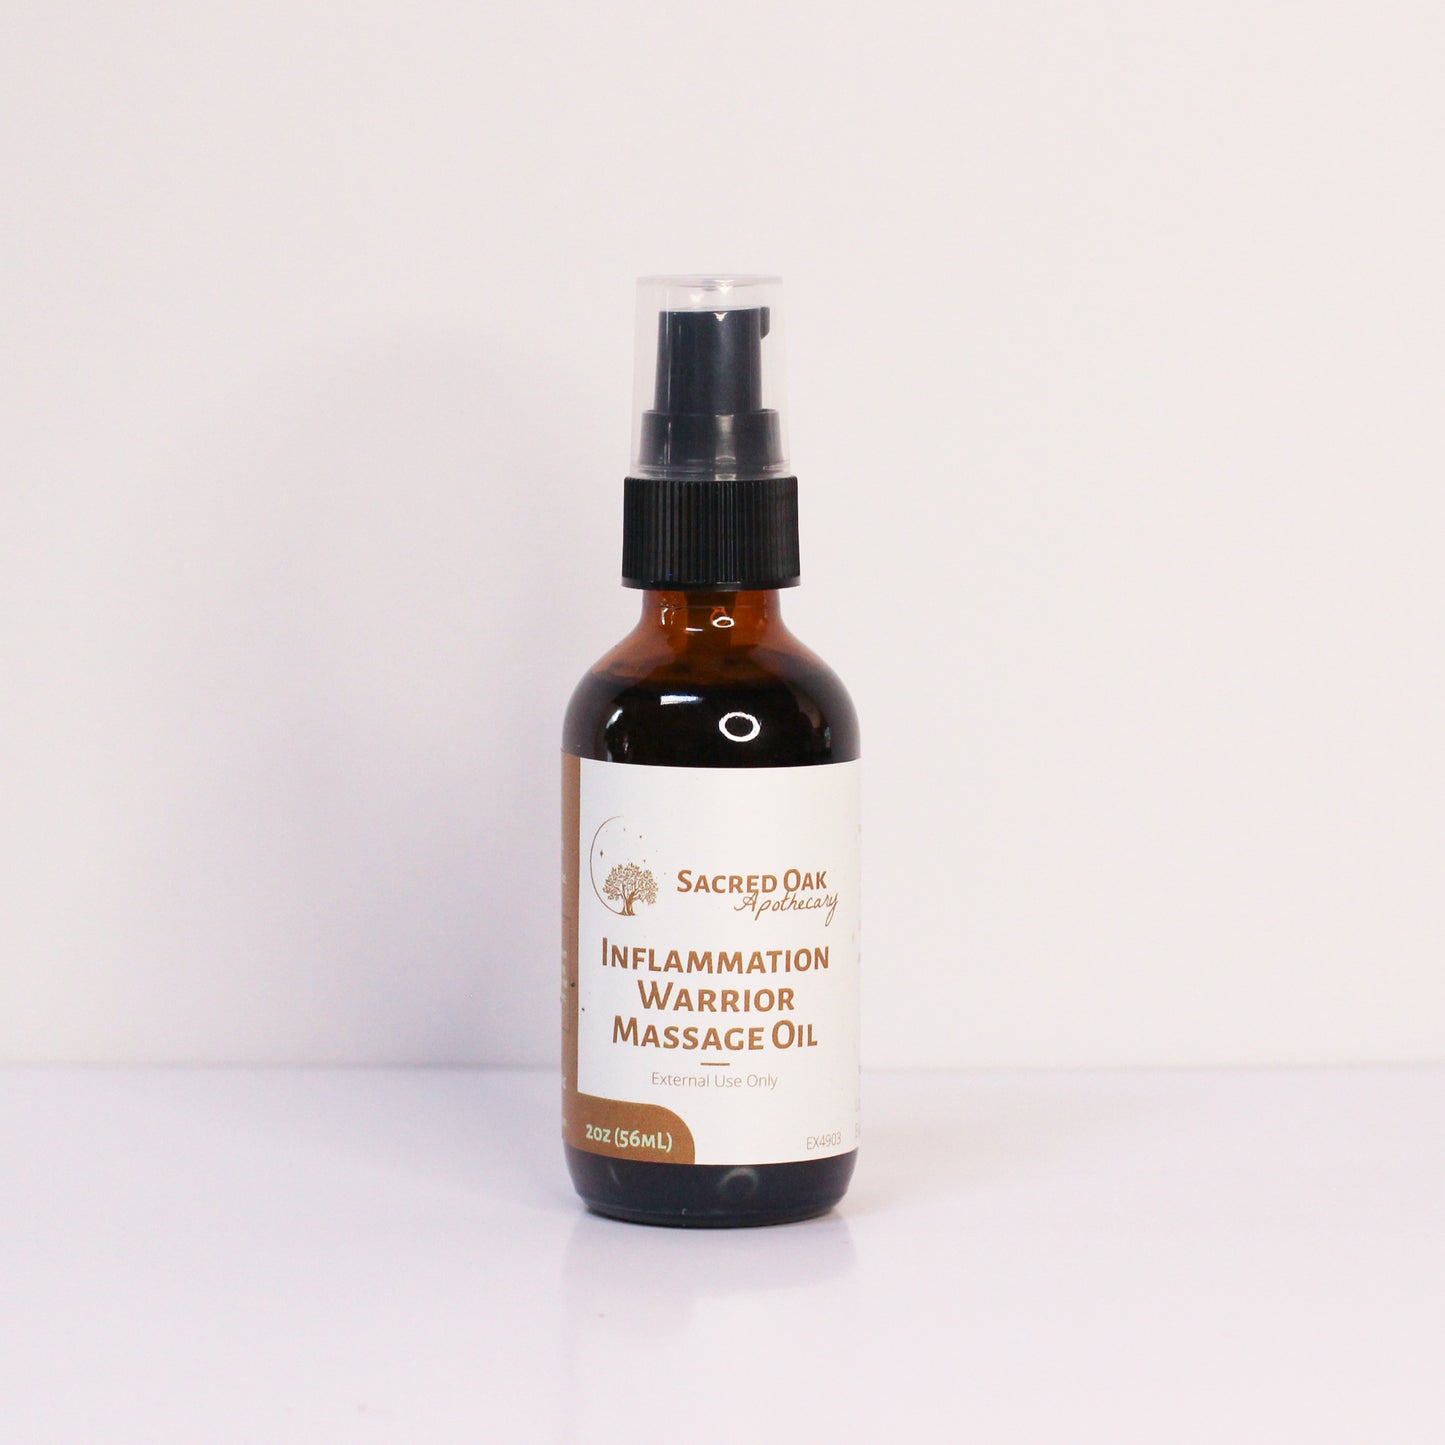 Inflammation Warrior Massage Oil